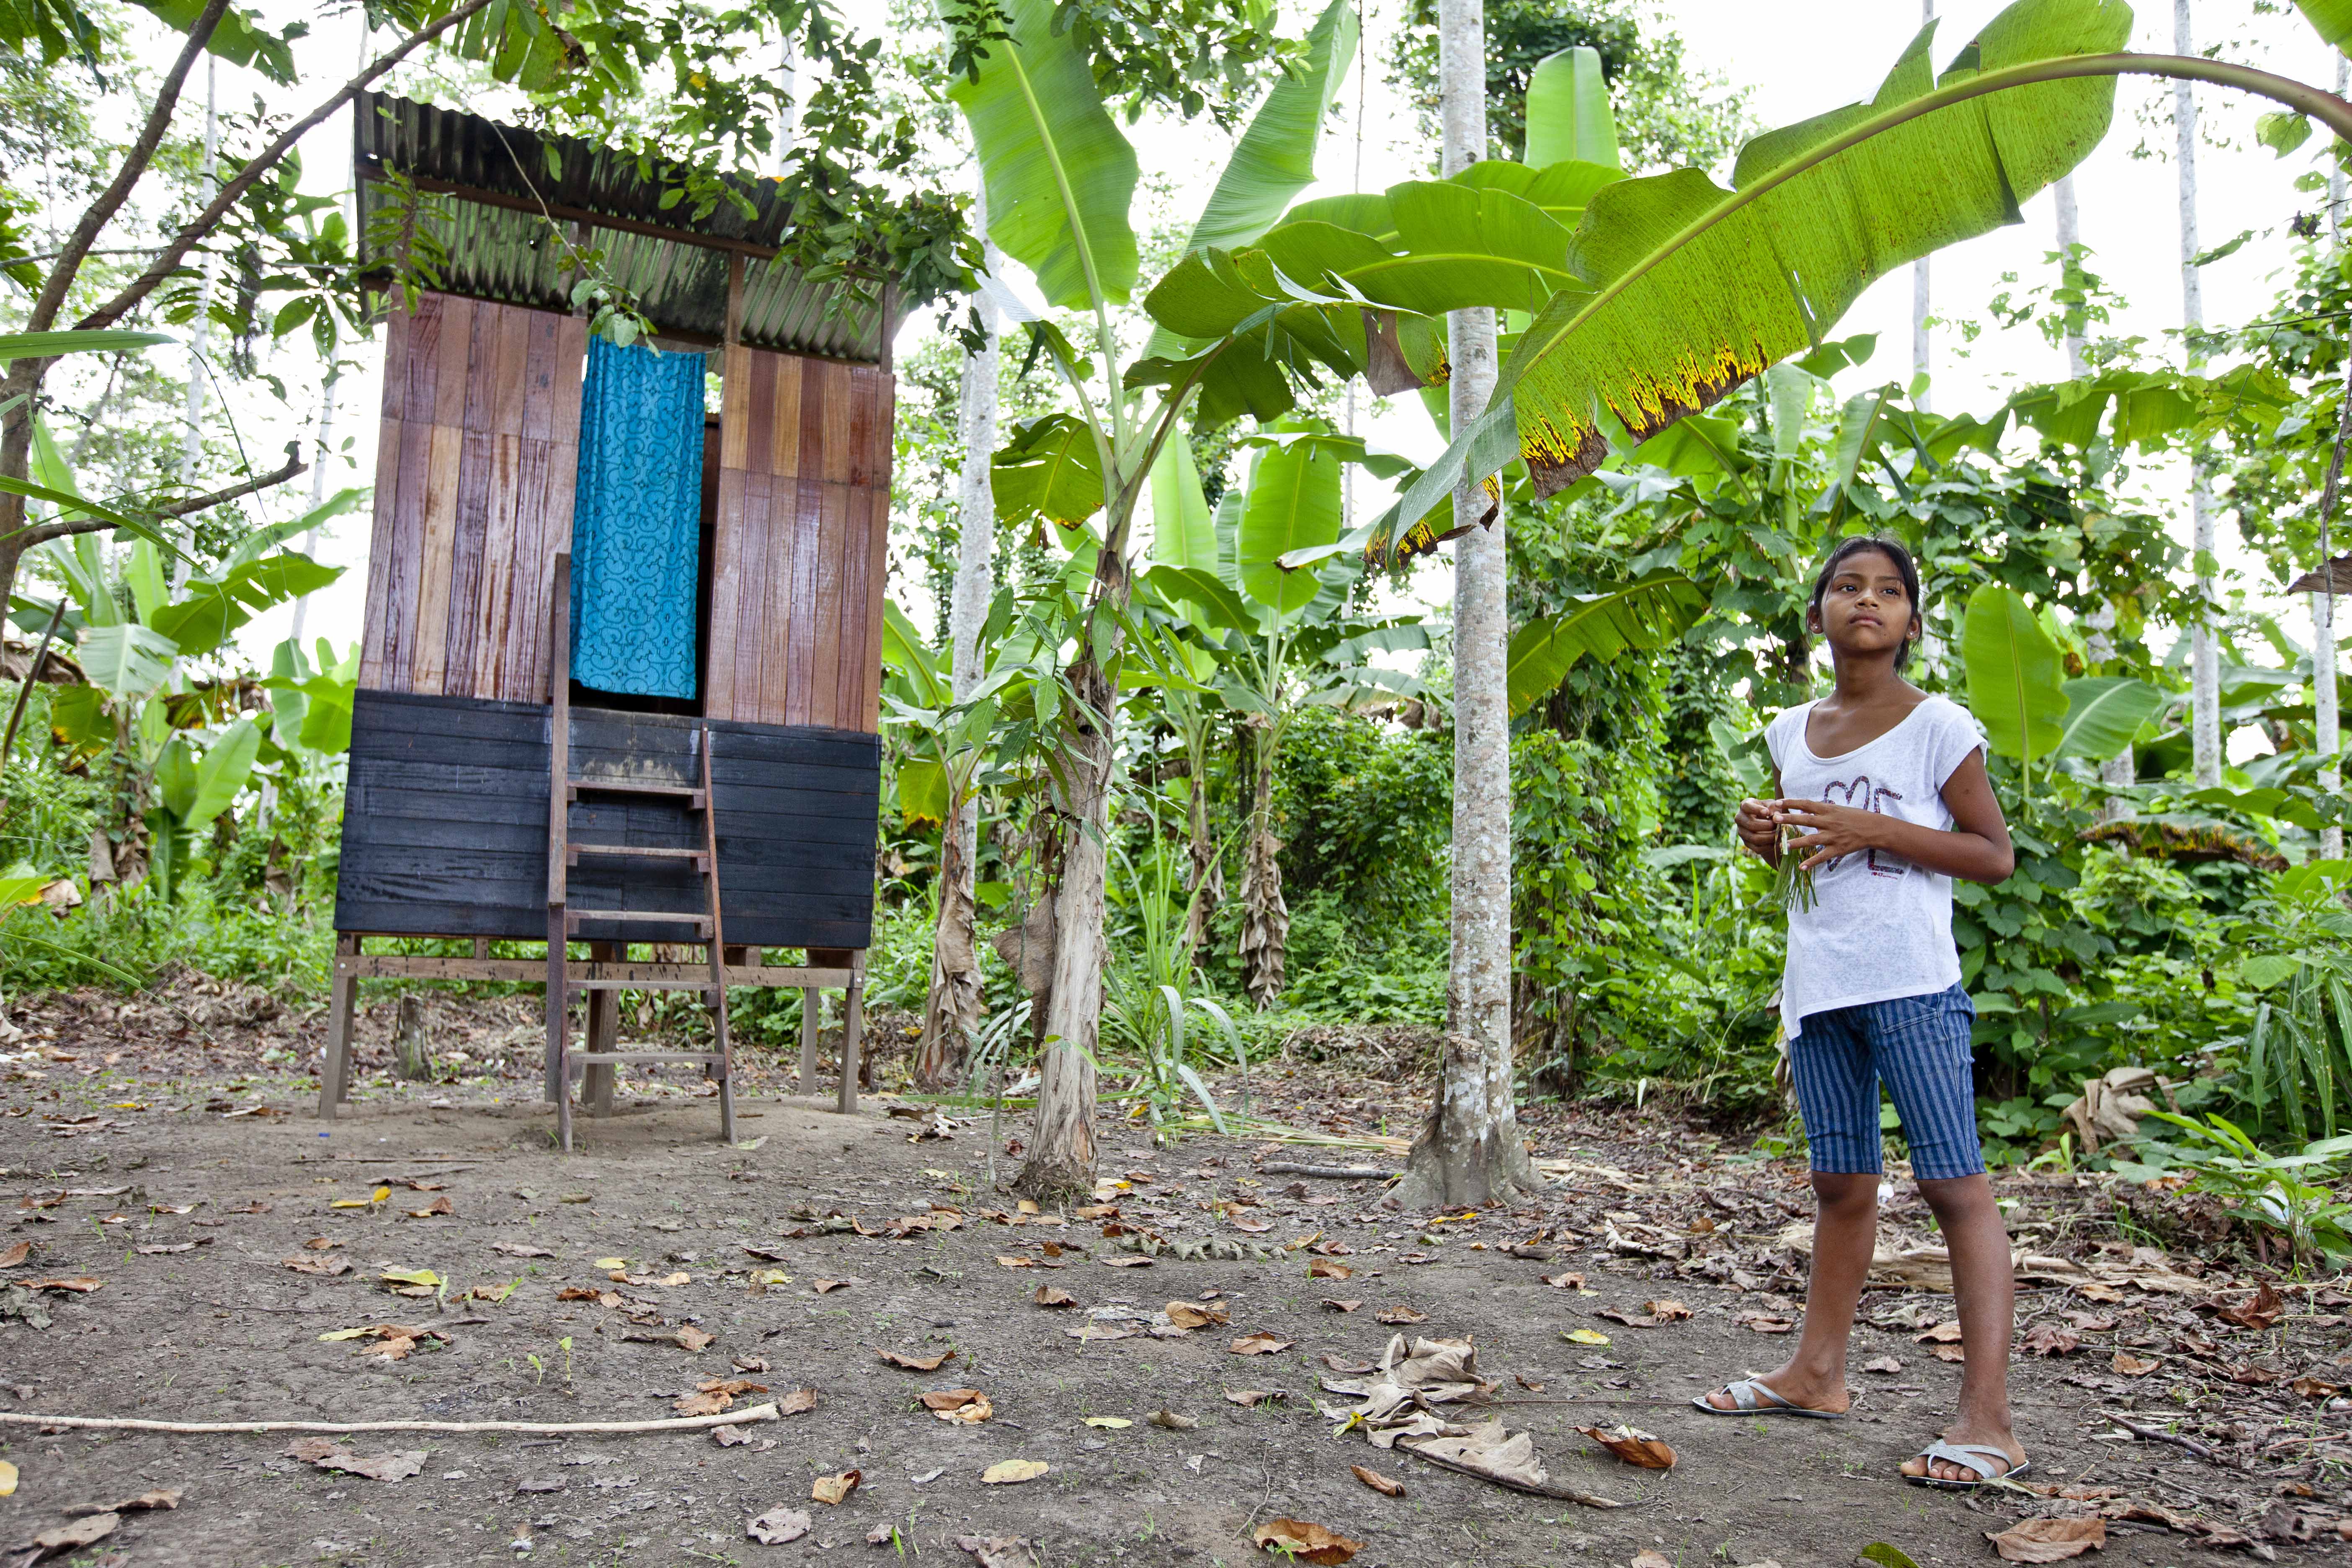 La Fundación Aquae, entre otras cosas, ha conseguido que más de 5.000 familias de 15 comunidades rurales peruanas dispongan de instalaciones seguras de acceso a agua potable y saneamiento